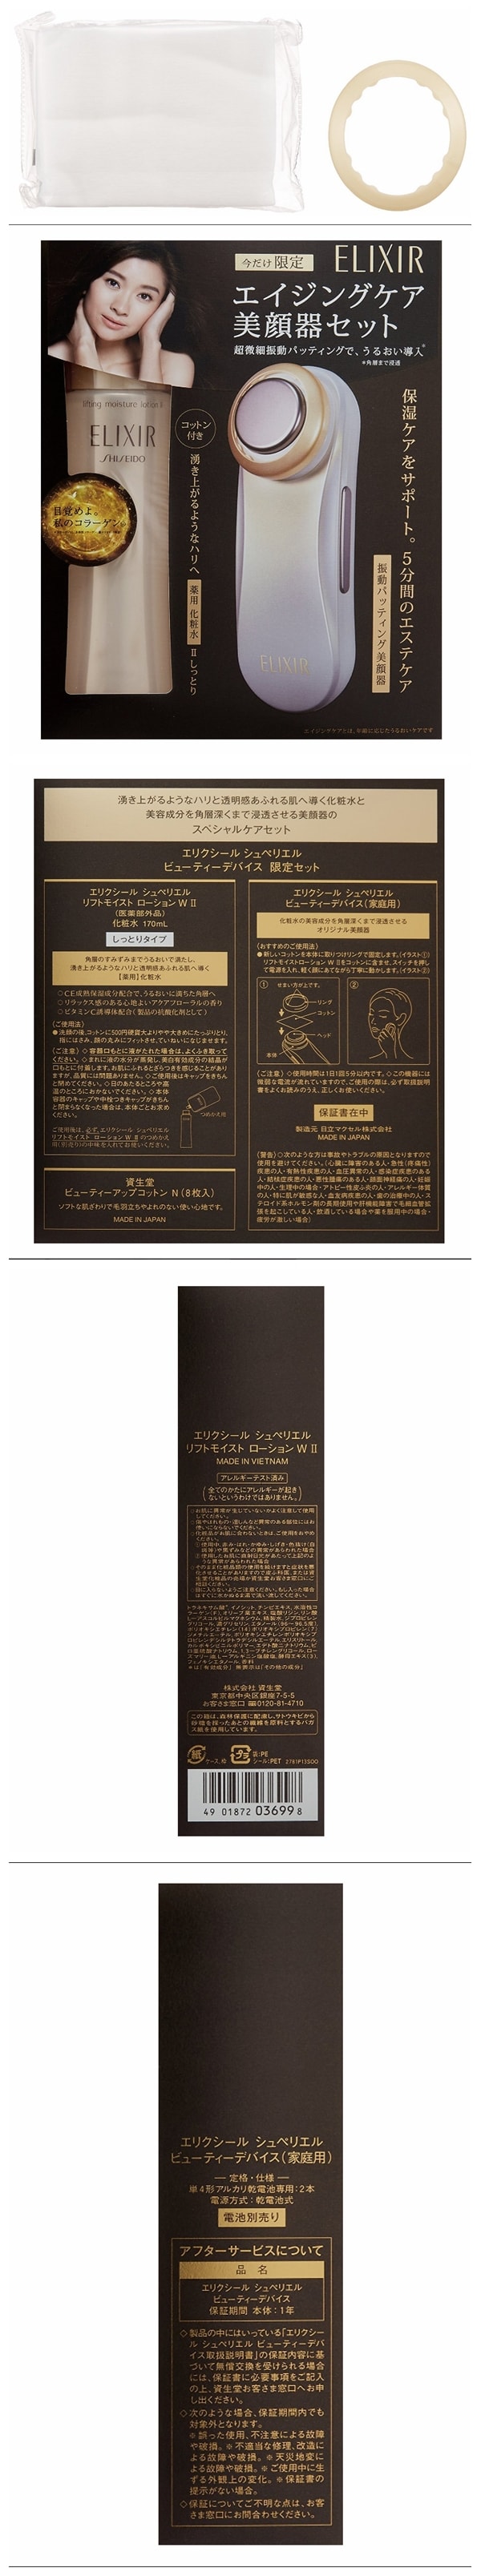 【日本直郵】日本本土 怡麗絲爾 限定套裝: ELIXIR 滋潤緊緻2號化妝水 170ml+日立美容儀1部